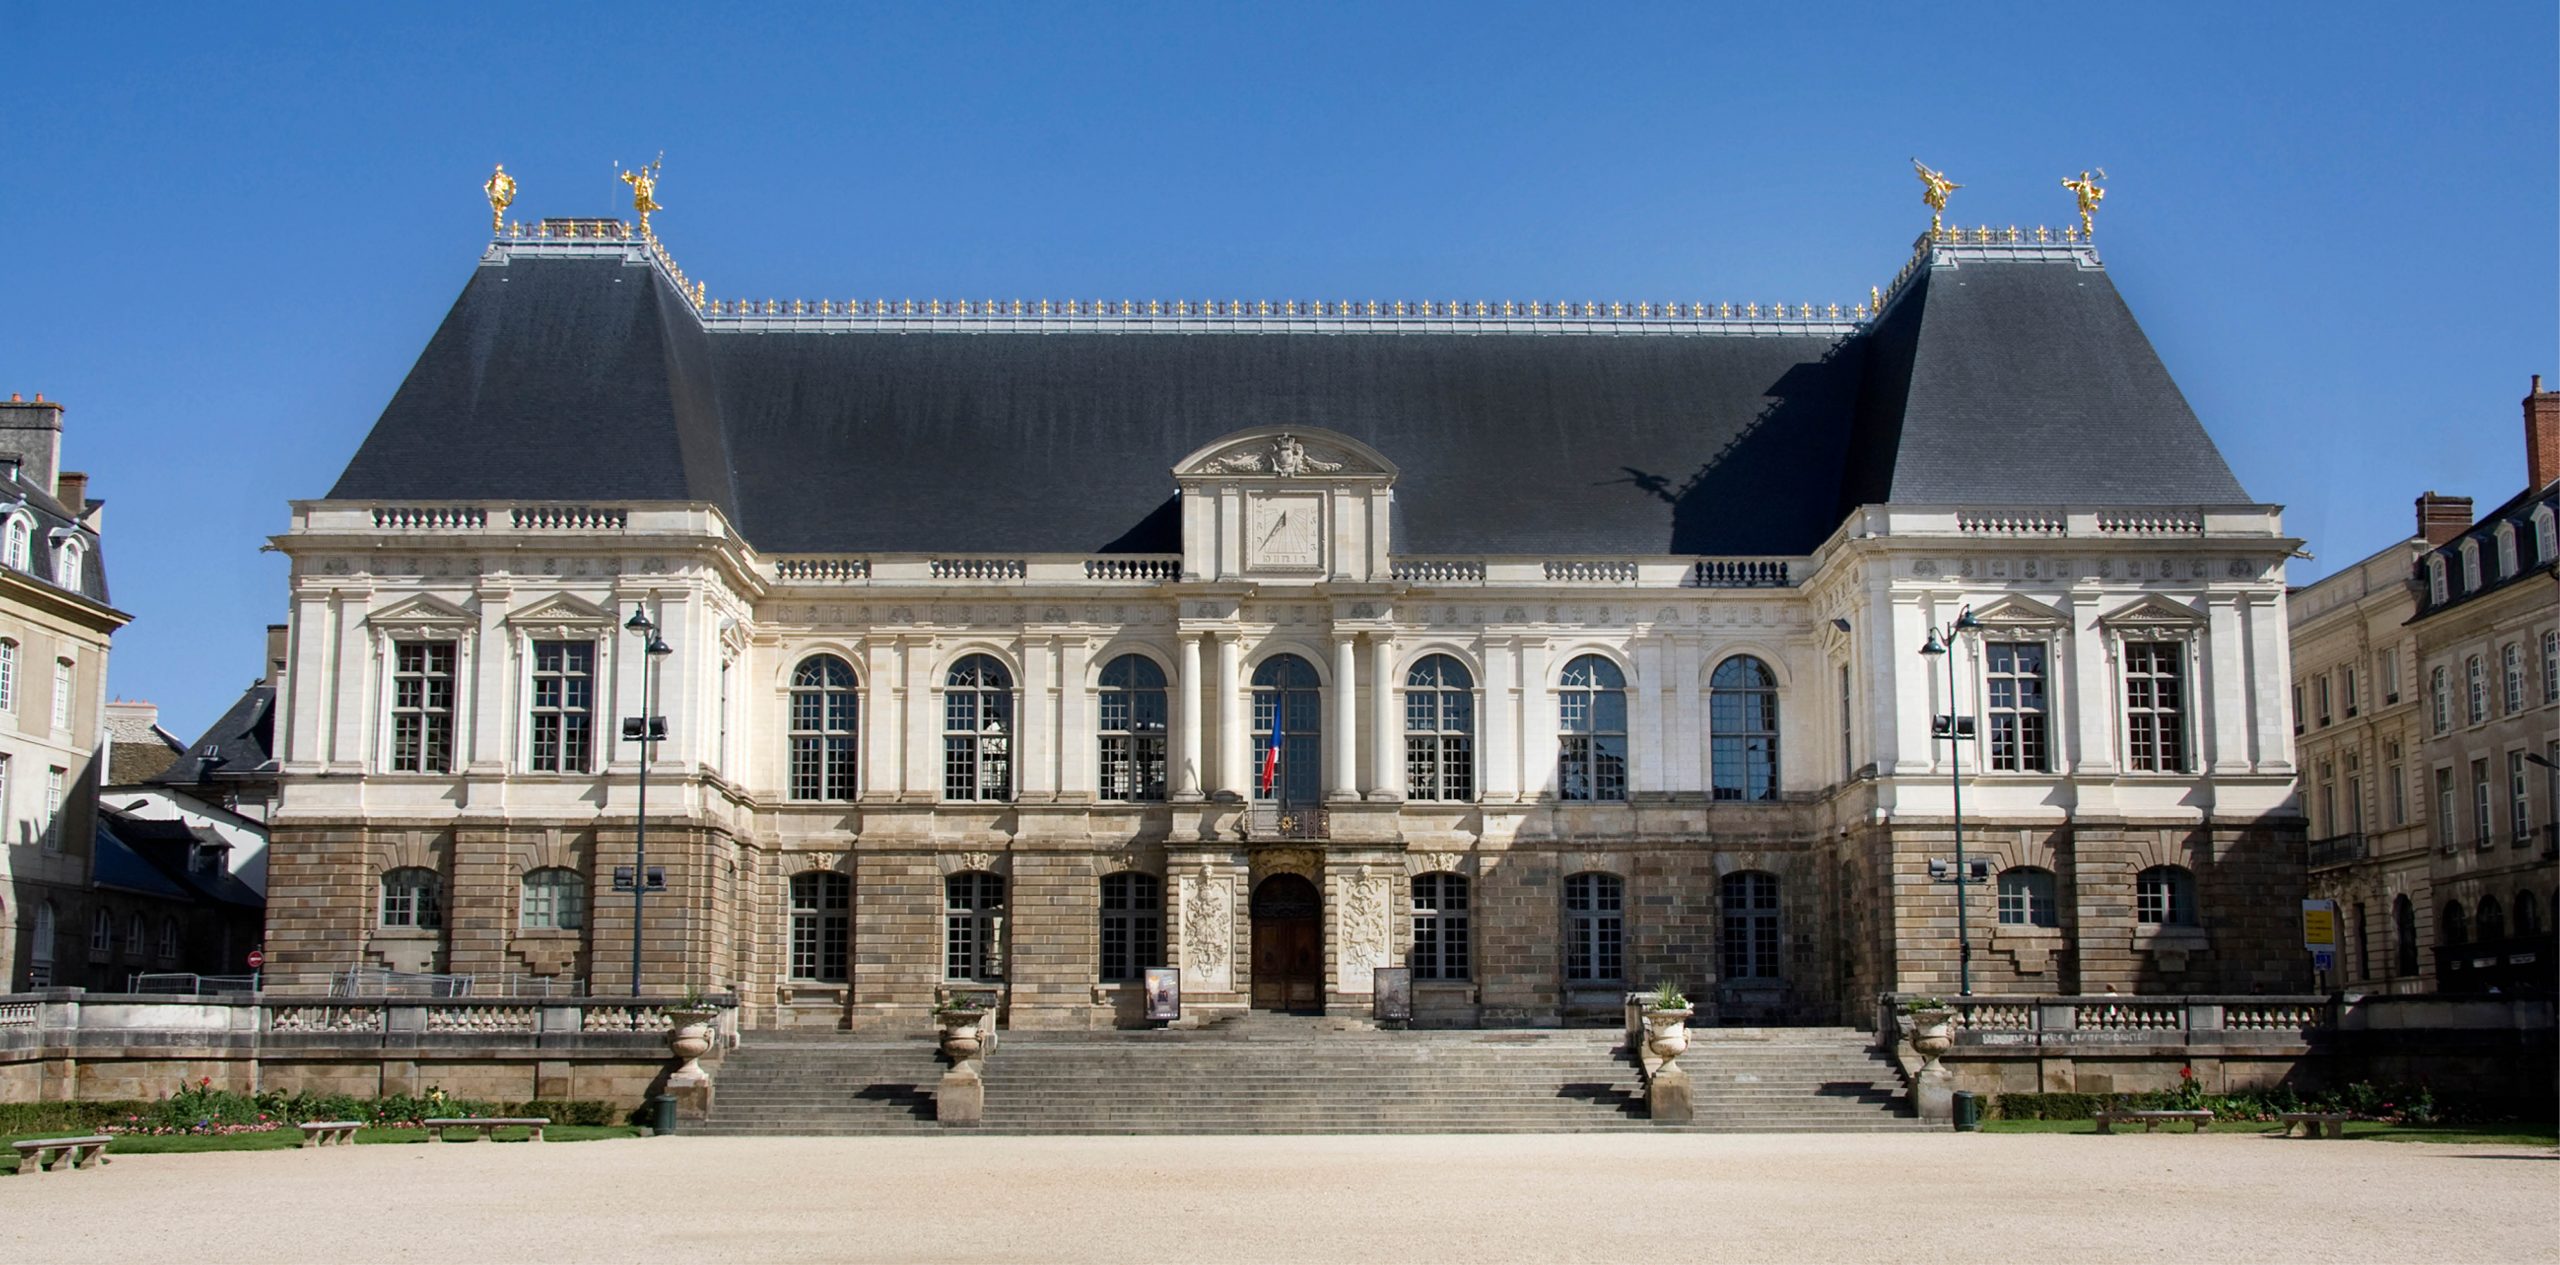 Cour d'appel de Rennes